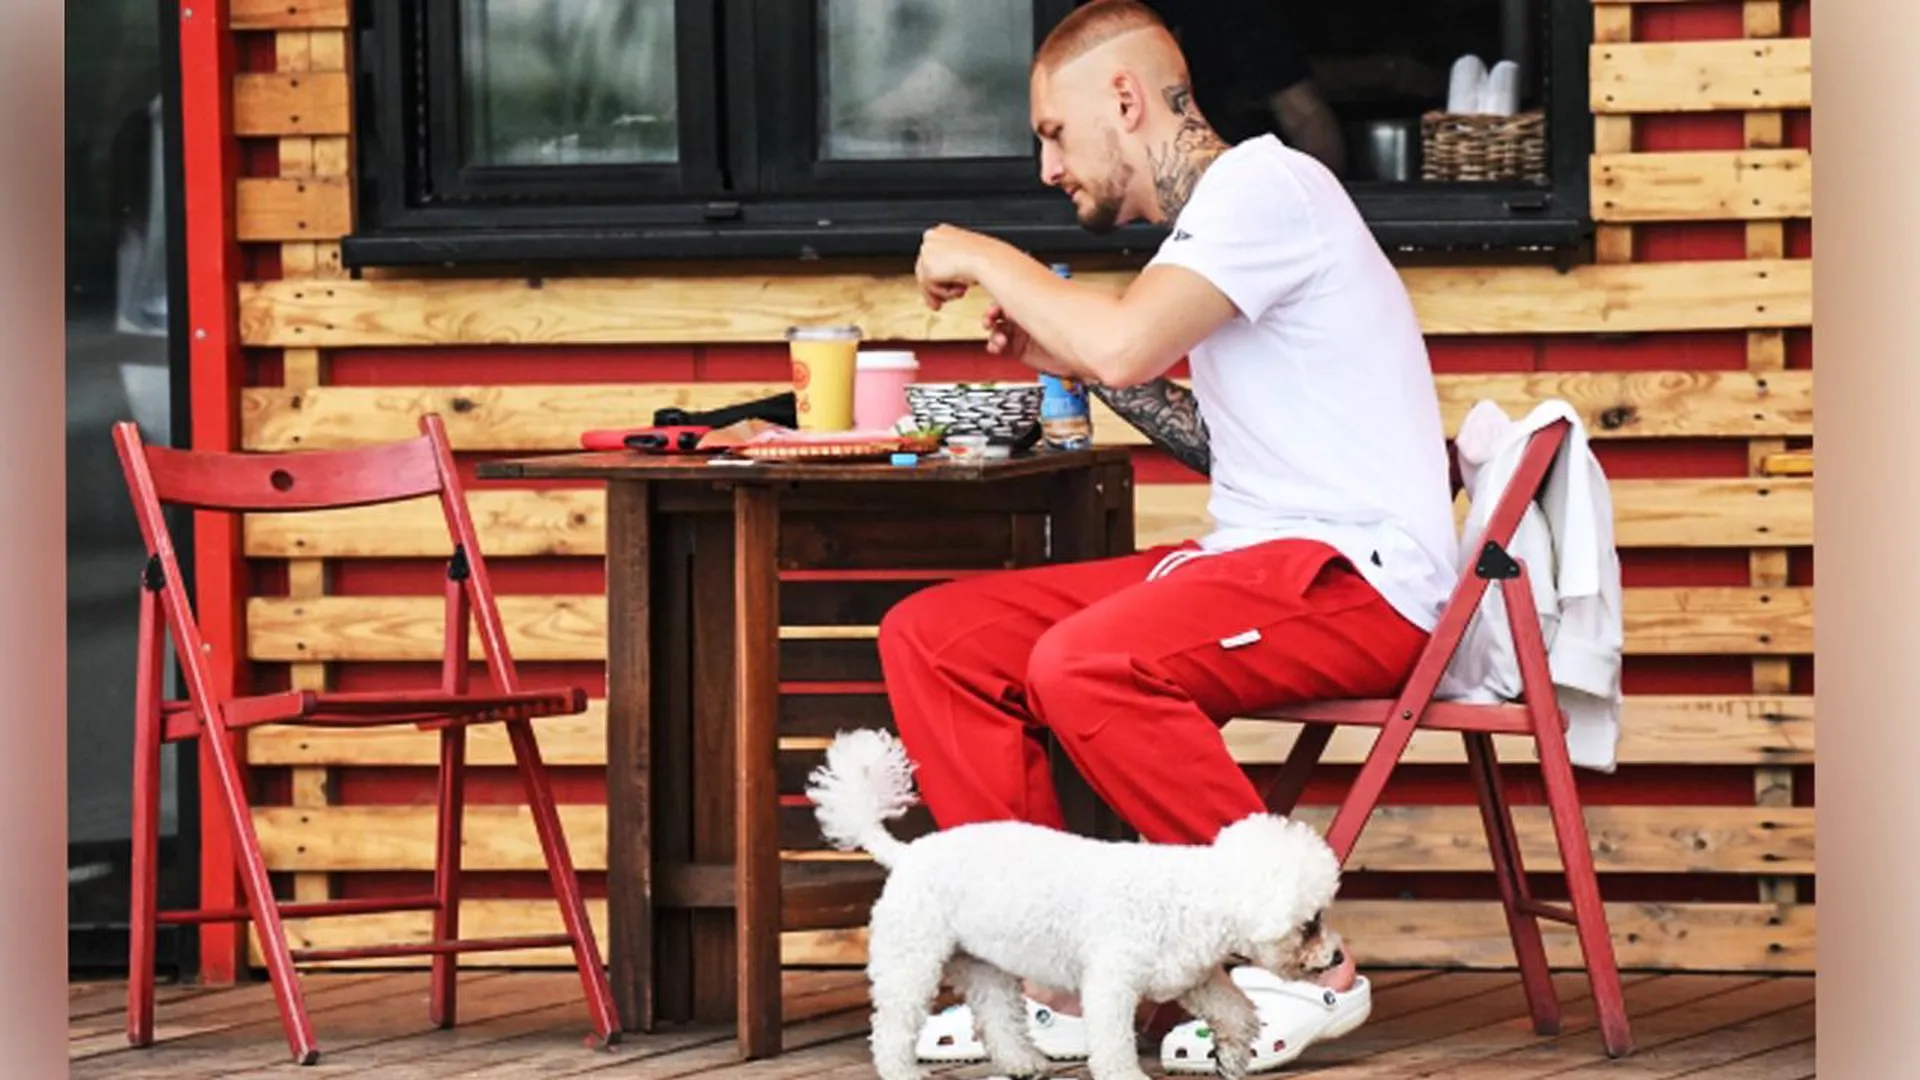 Уличные кафе в Подмосковье в этом году заработают на скорости обслуживания